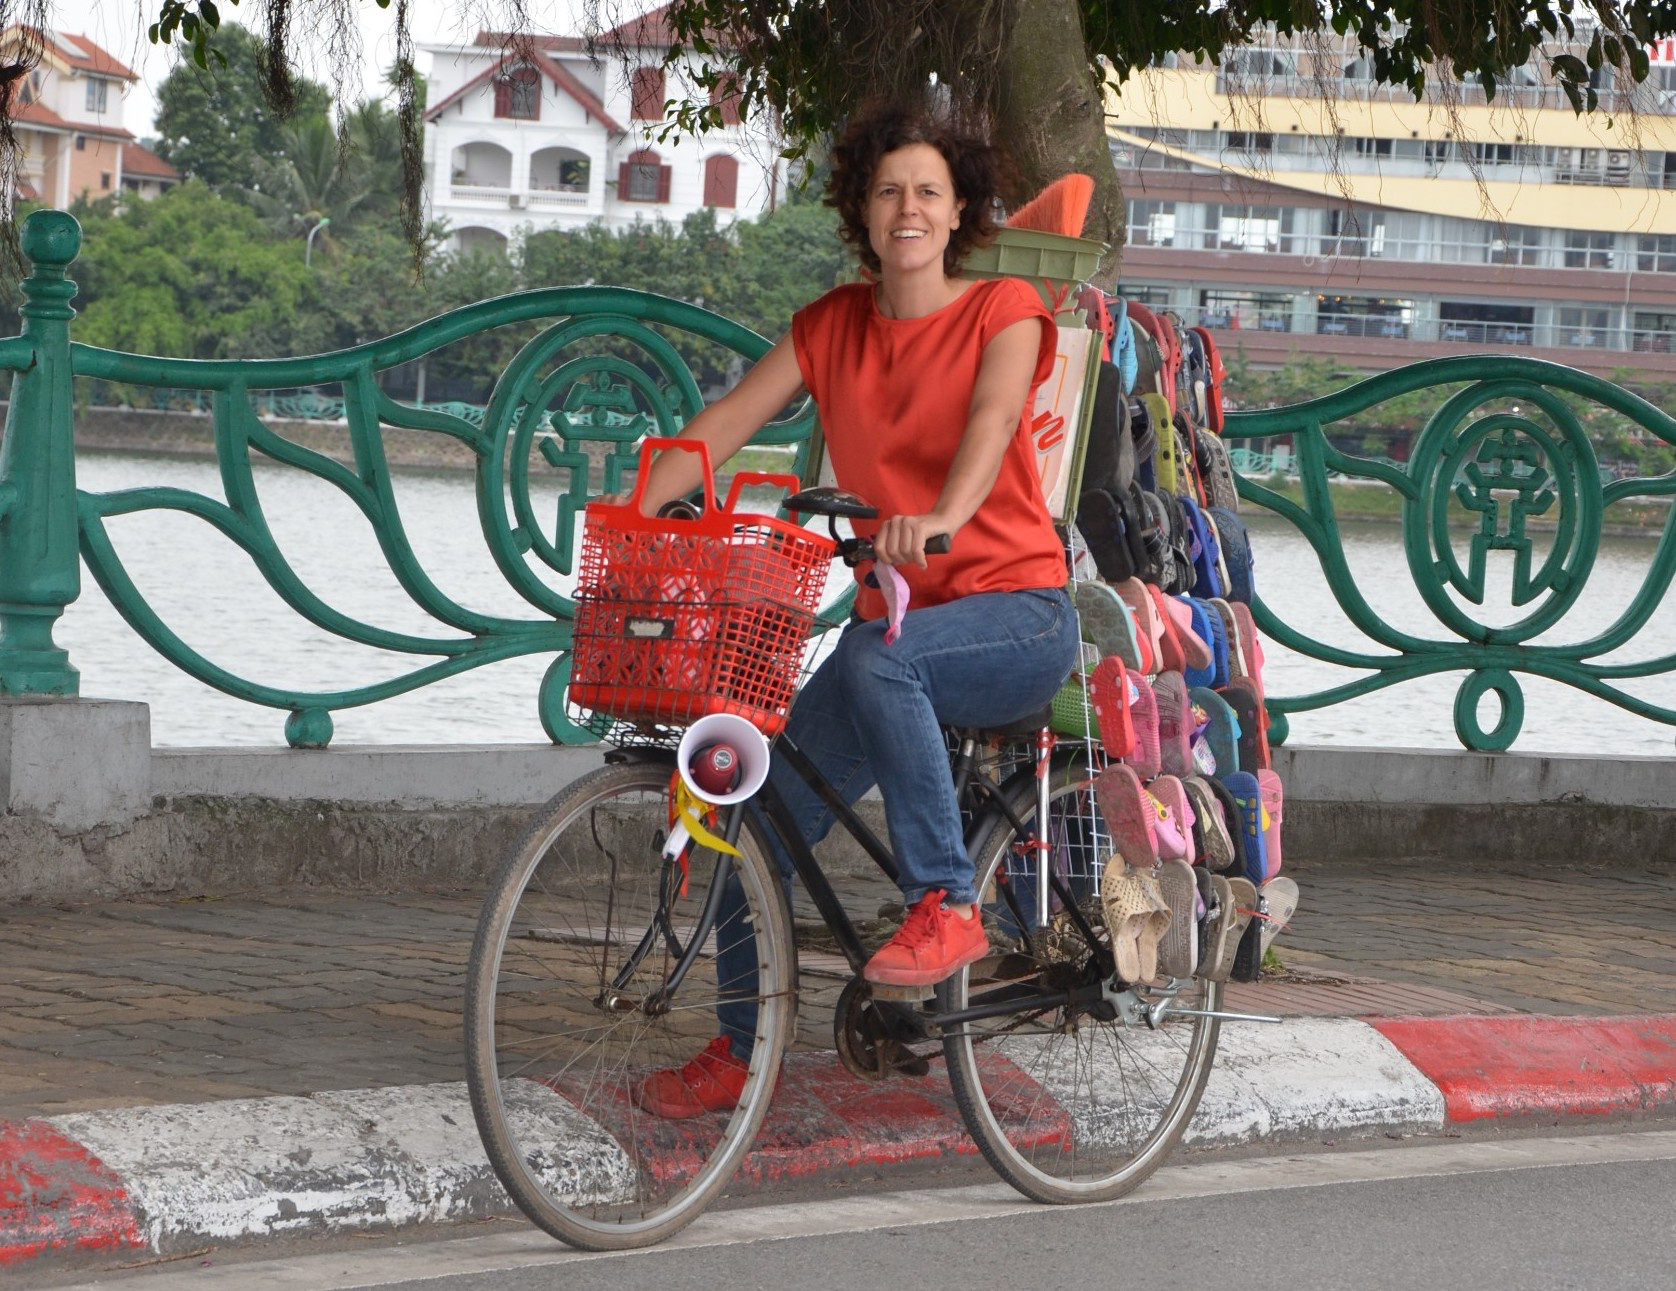 Belgian woman in Vietnam: Pick up lost sandal on roads